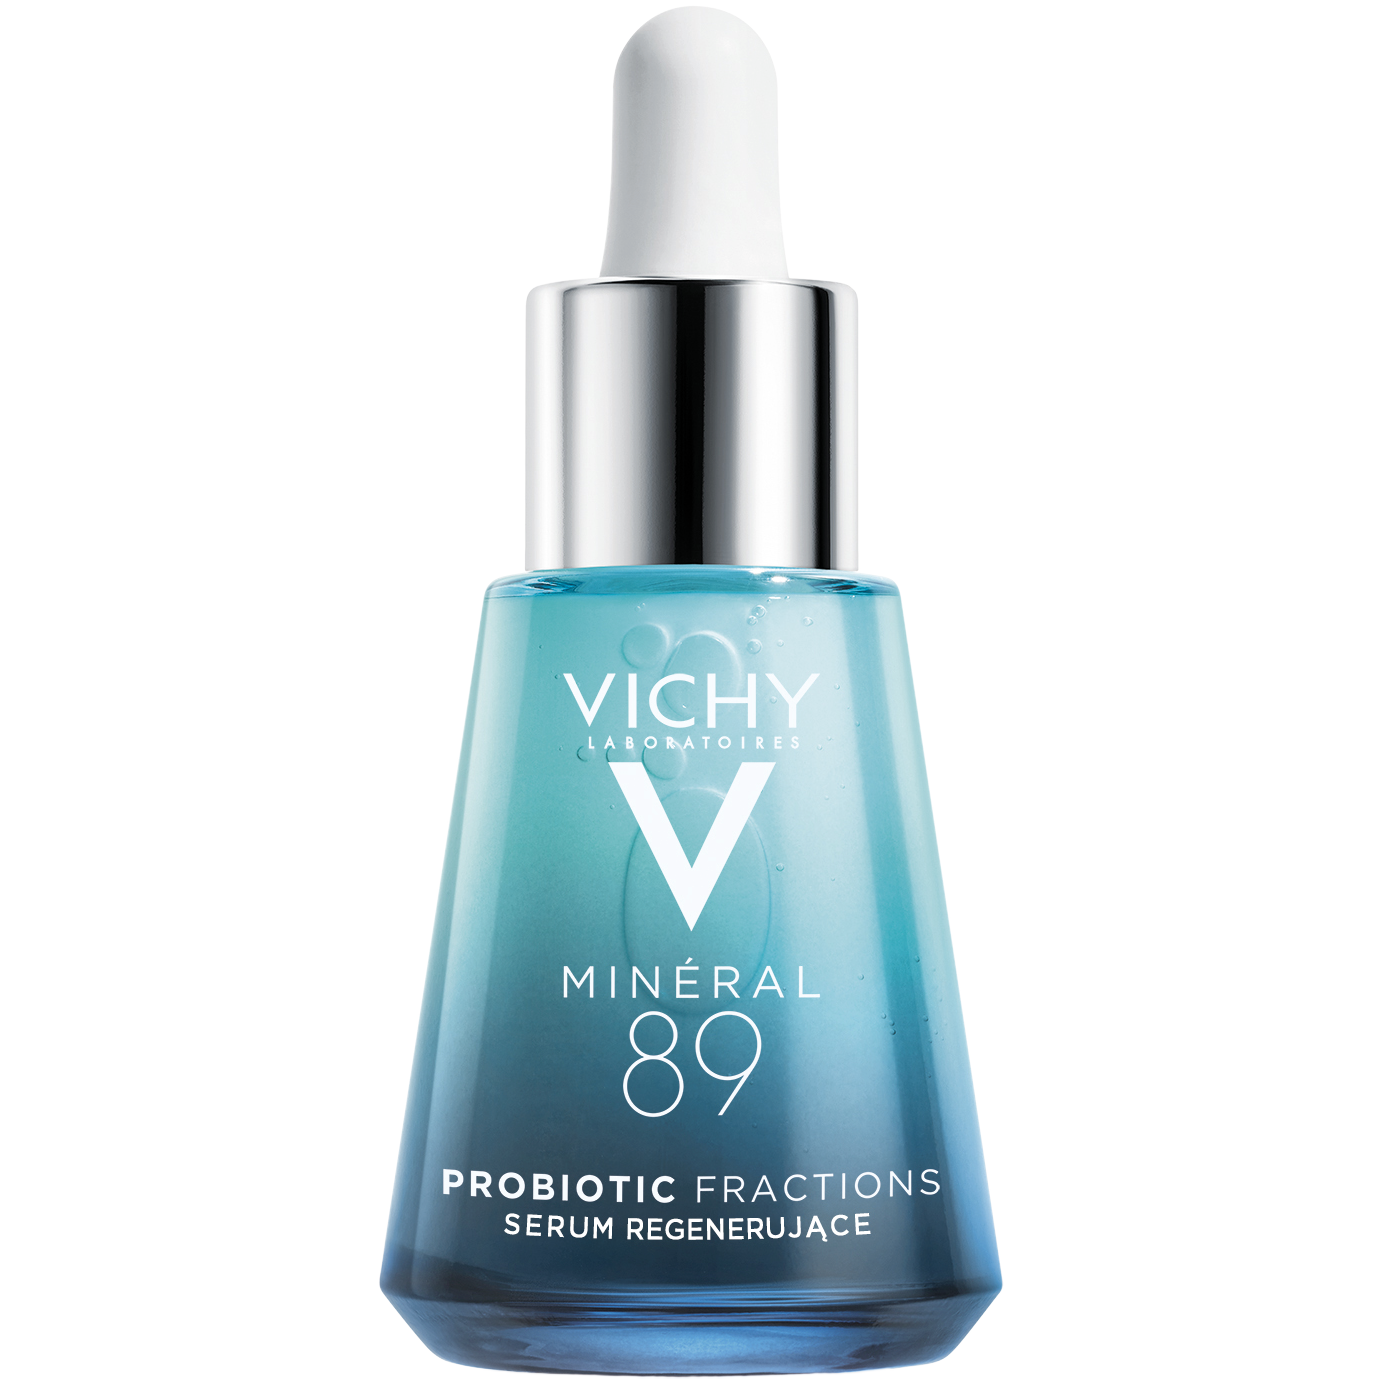 цена Vichy Mineral 89 Probiotic Fractions концентрированная регенерирующая сыворотка для лица, 30 мл